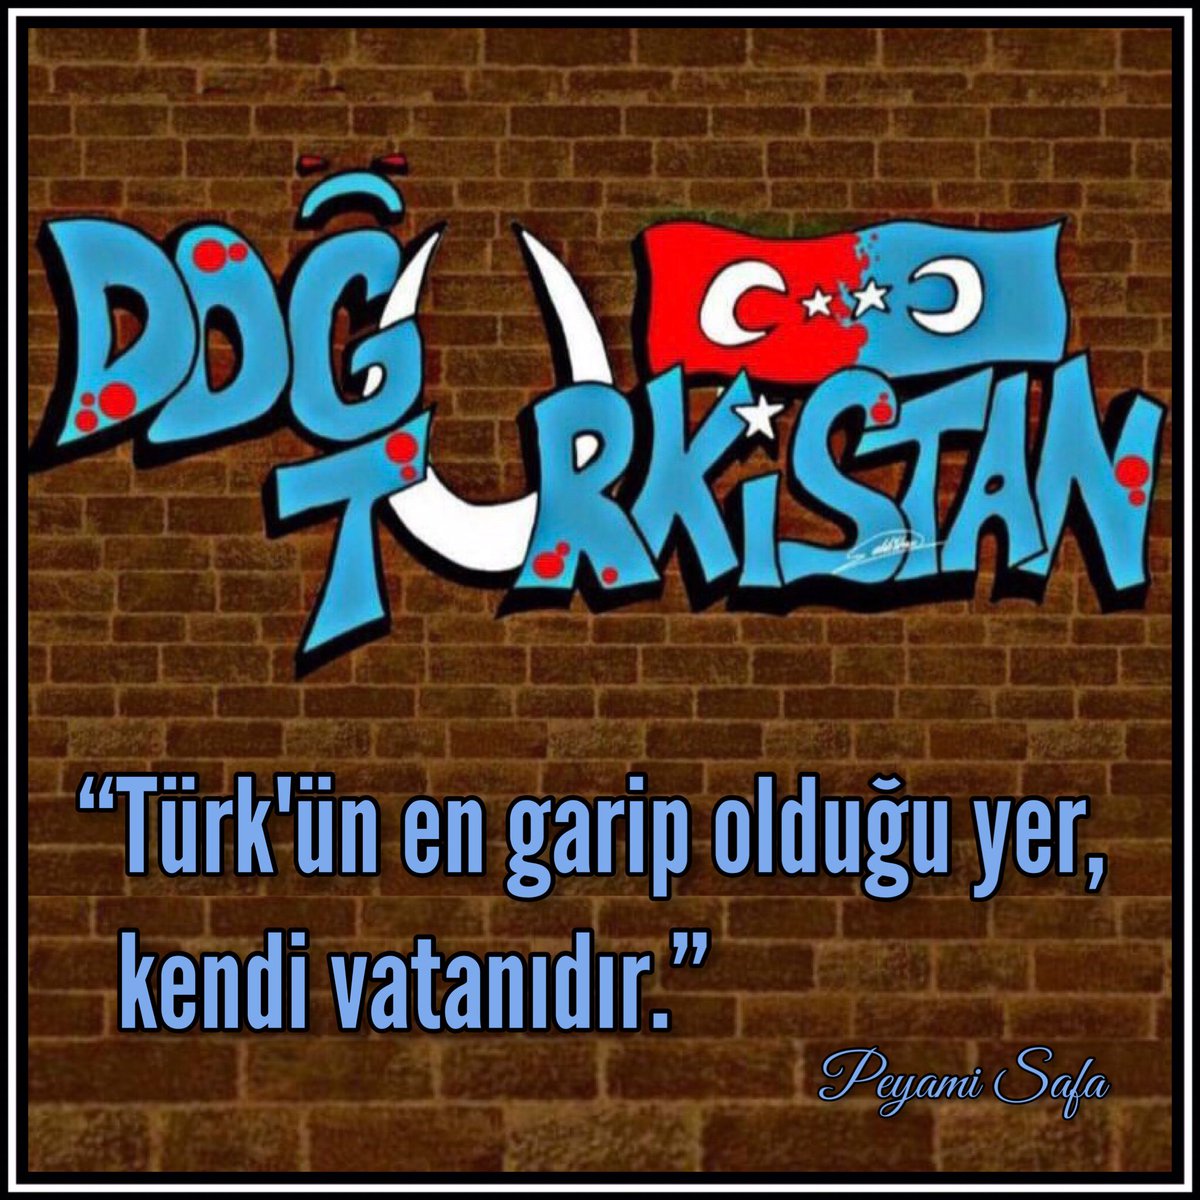 “Türk’ün en garip olduğu yer, kendi vatanıdır.” 

#DoğuTÜRKİSTAN
#doğutürkistandazulümvar #doguturkistandakatliamvar #doğutürkistankanağlıyor